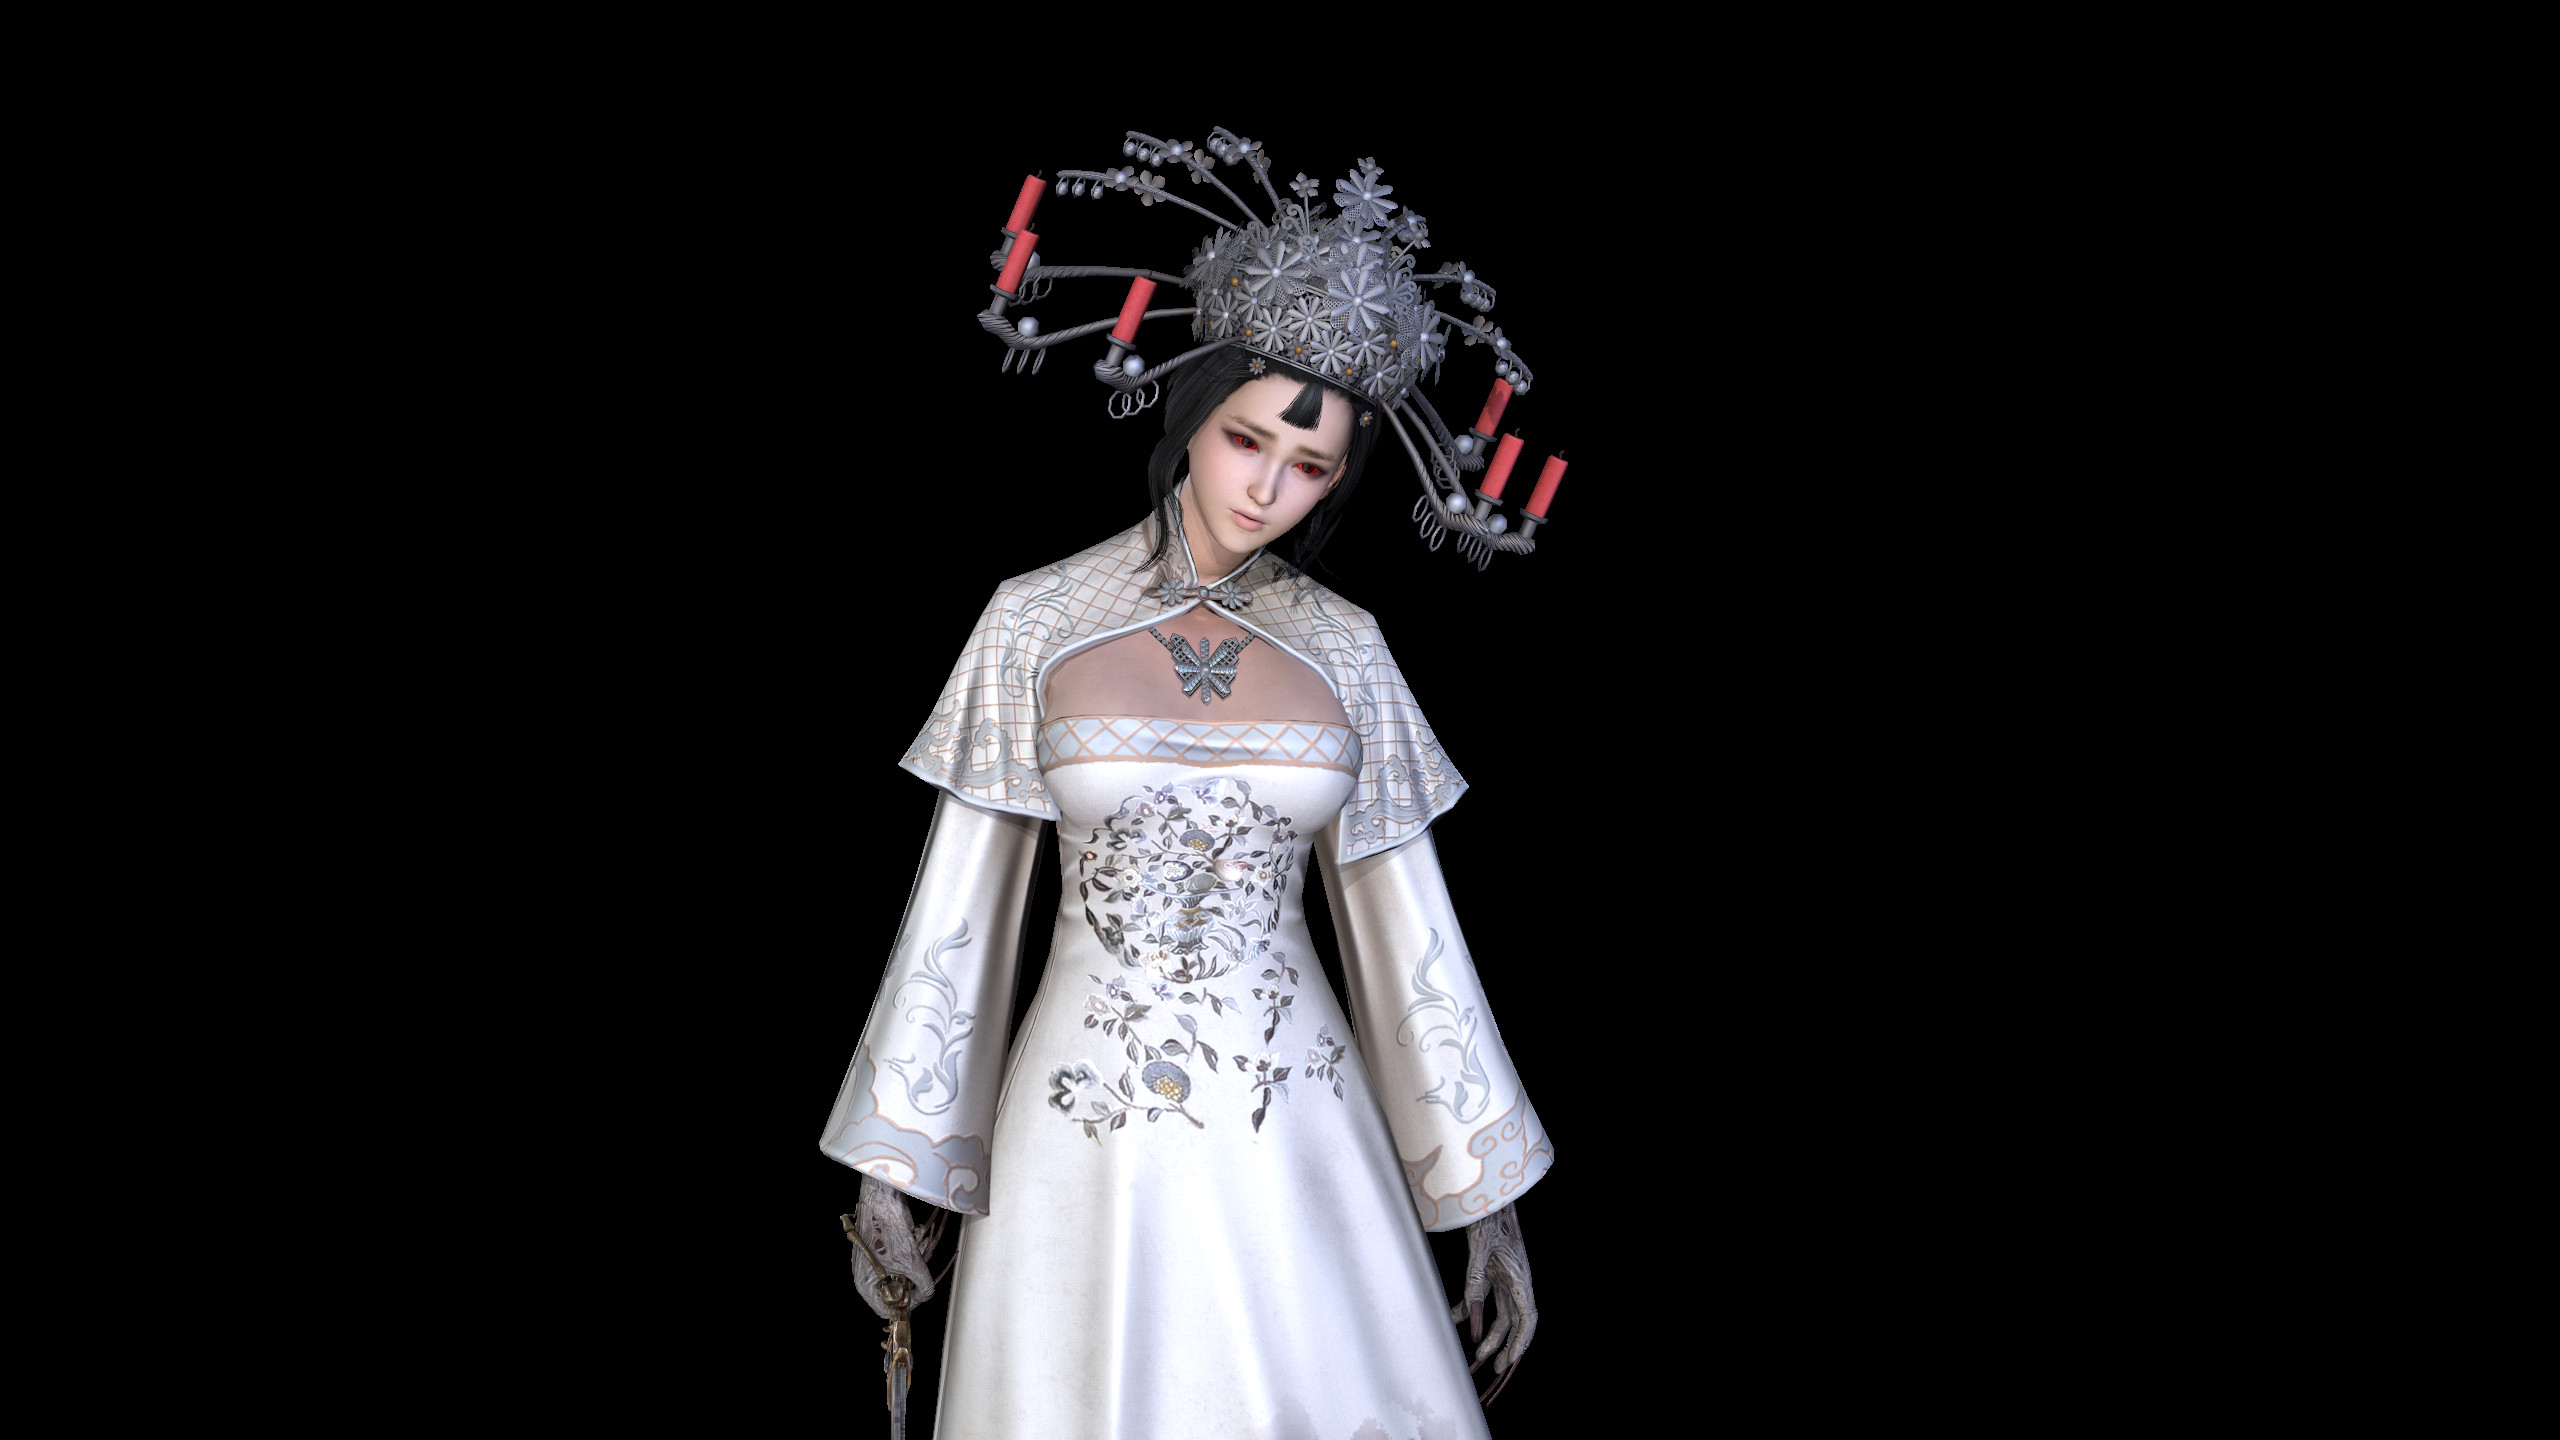 灵魂筹码 - 绣娘红烛空梦套装 Soul at Stake - "Candle In The Dream" The Bride's Outfit screenshot